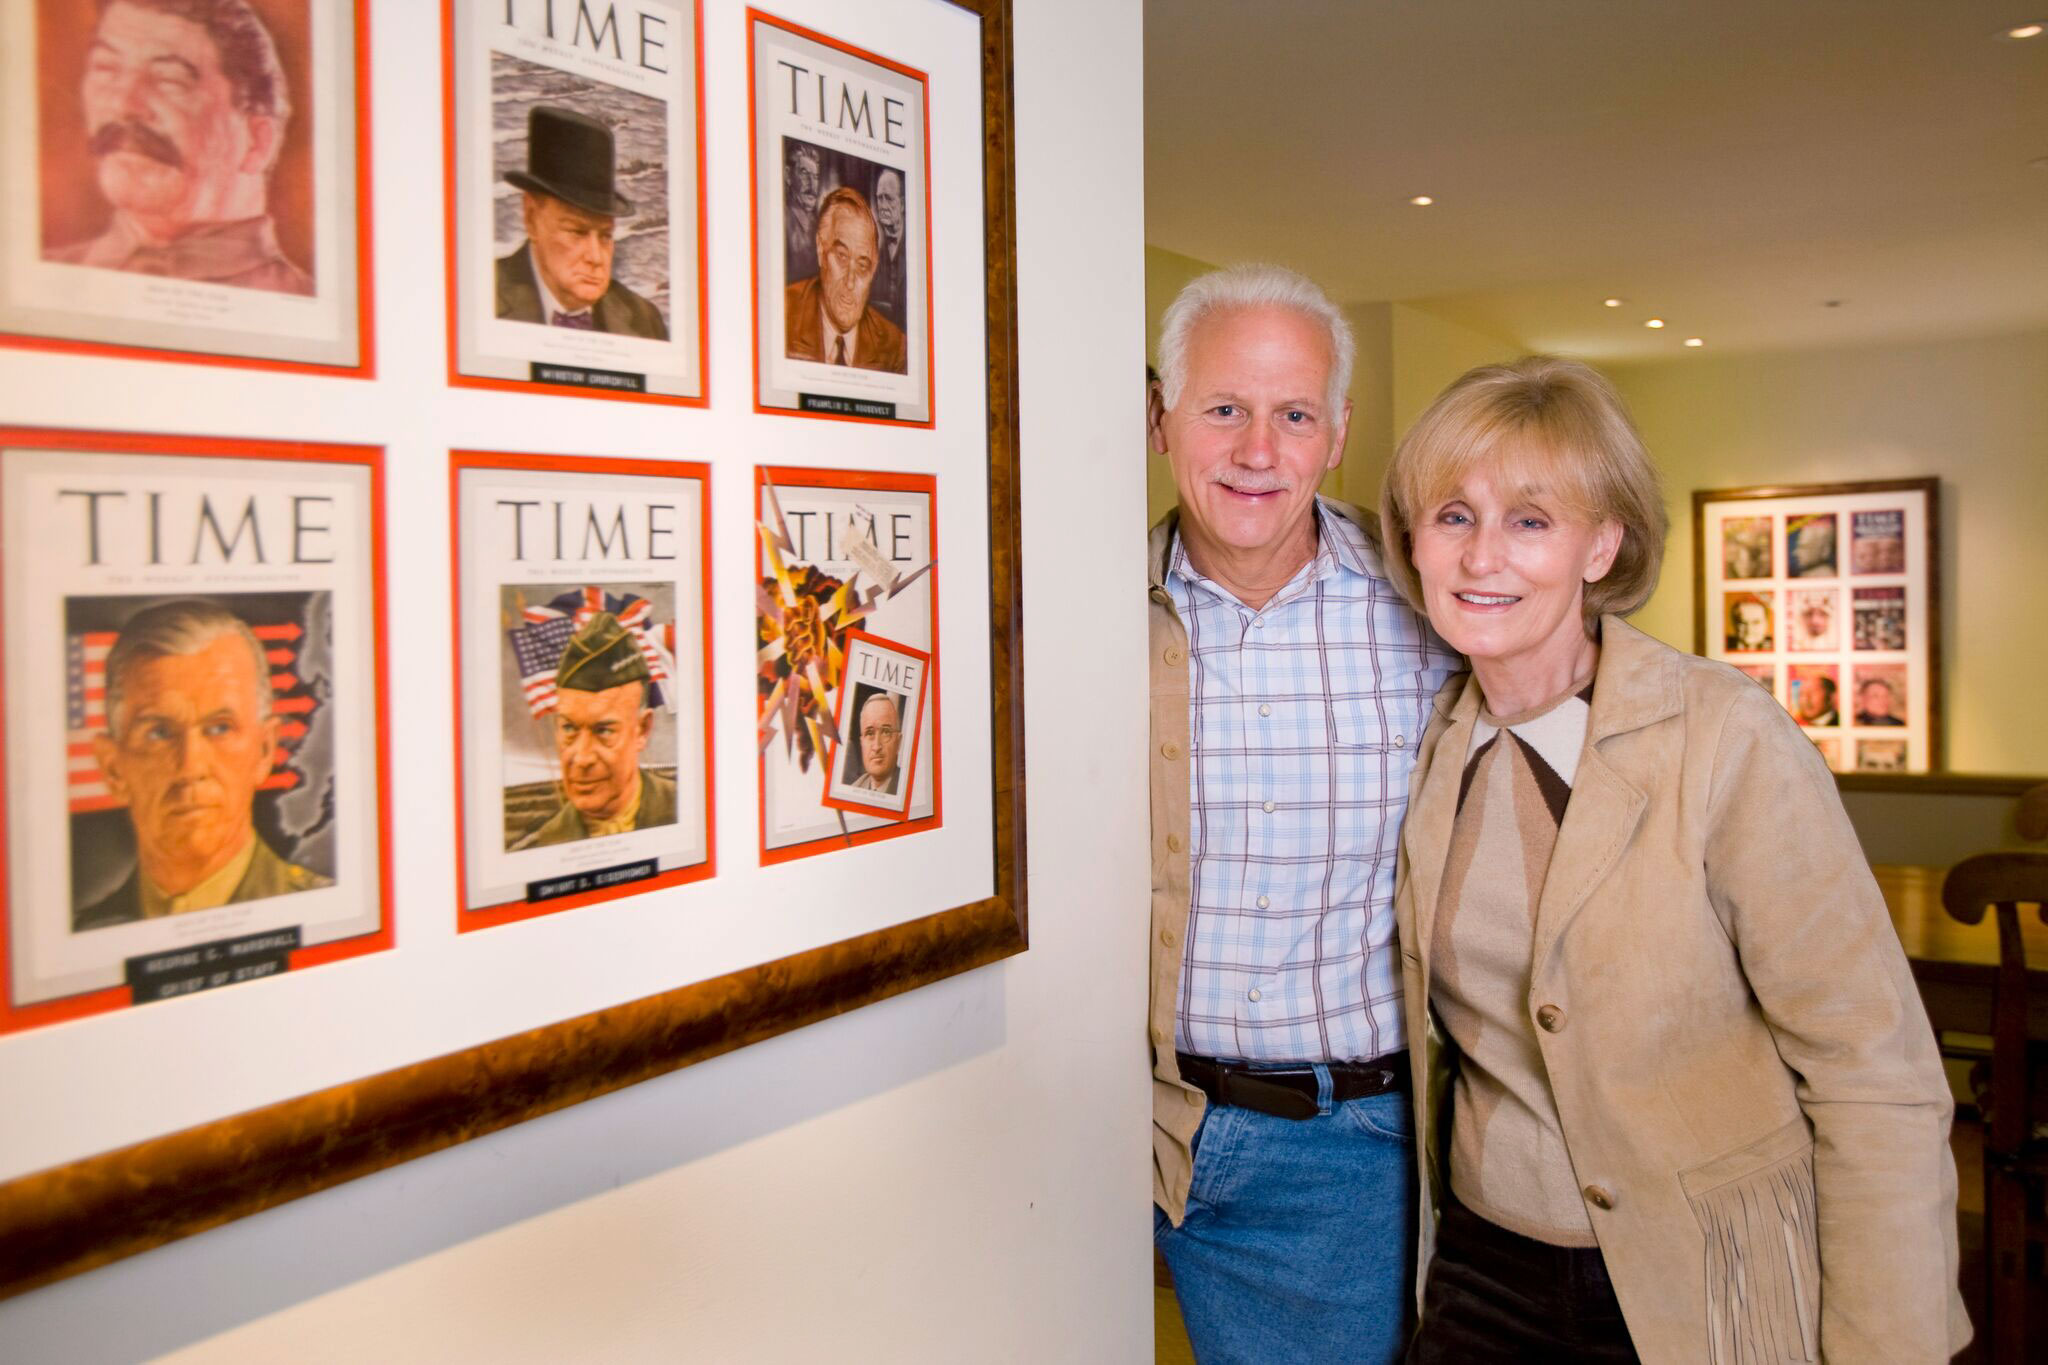 Ken Adelman and his wife, Carol, at their home in Aspen, Colo. (Courtesy of Ken Adelman)